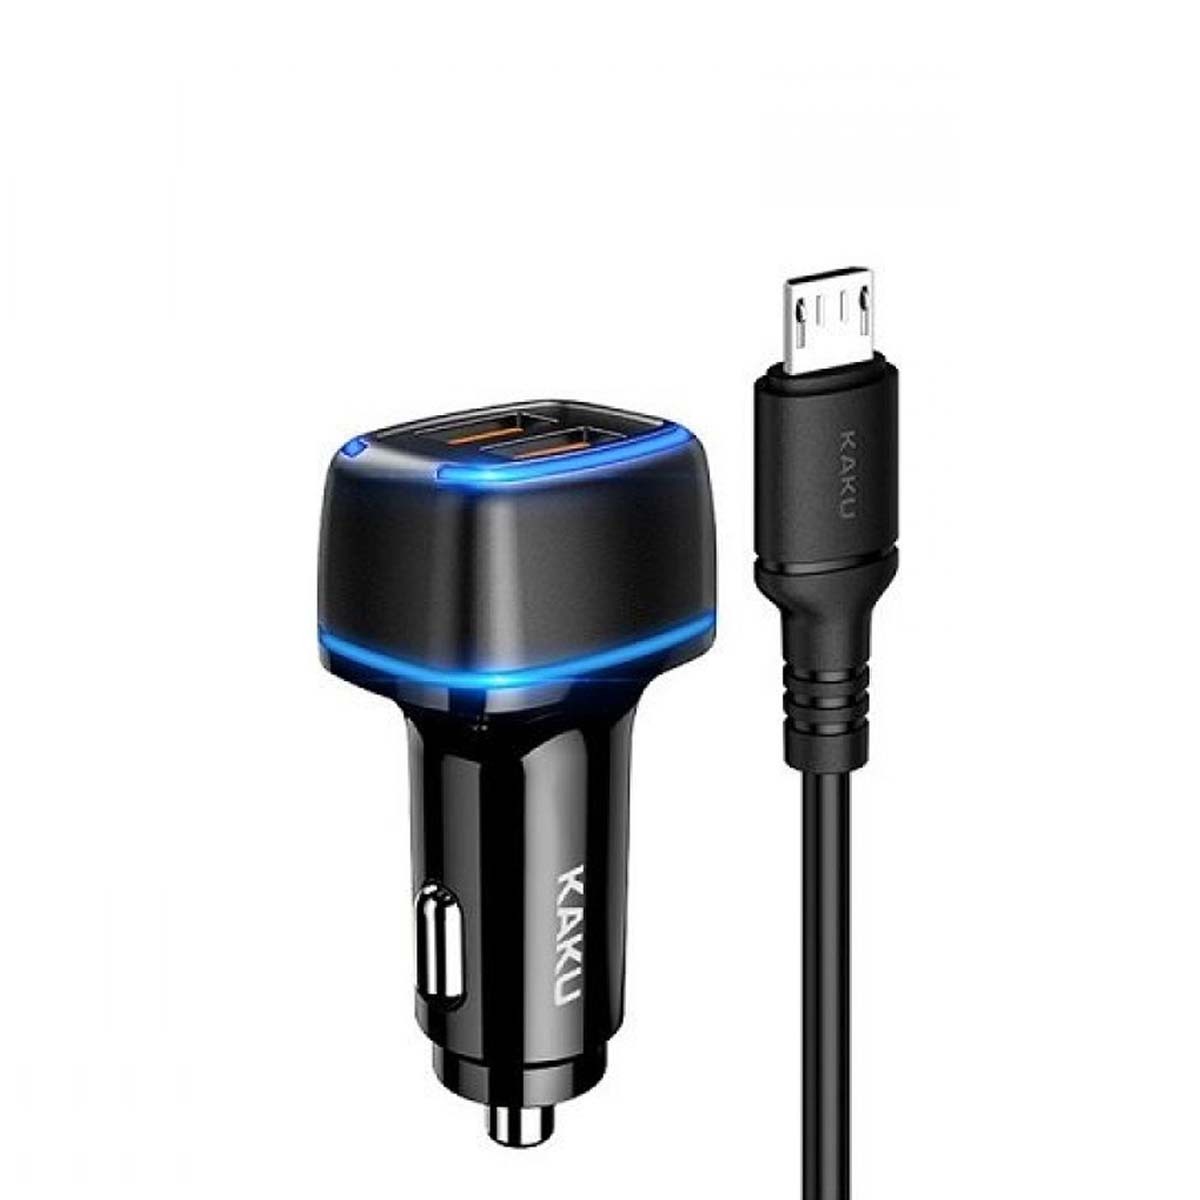 АЗУ (Автомобильное зарядное устройство) KAKU KSC-528 c кабелем Micro USB, 2 USB, 2.8А, длина 1 метр, цвет черный